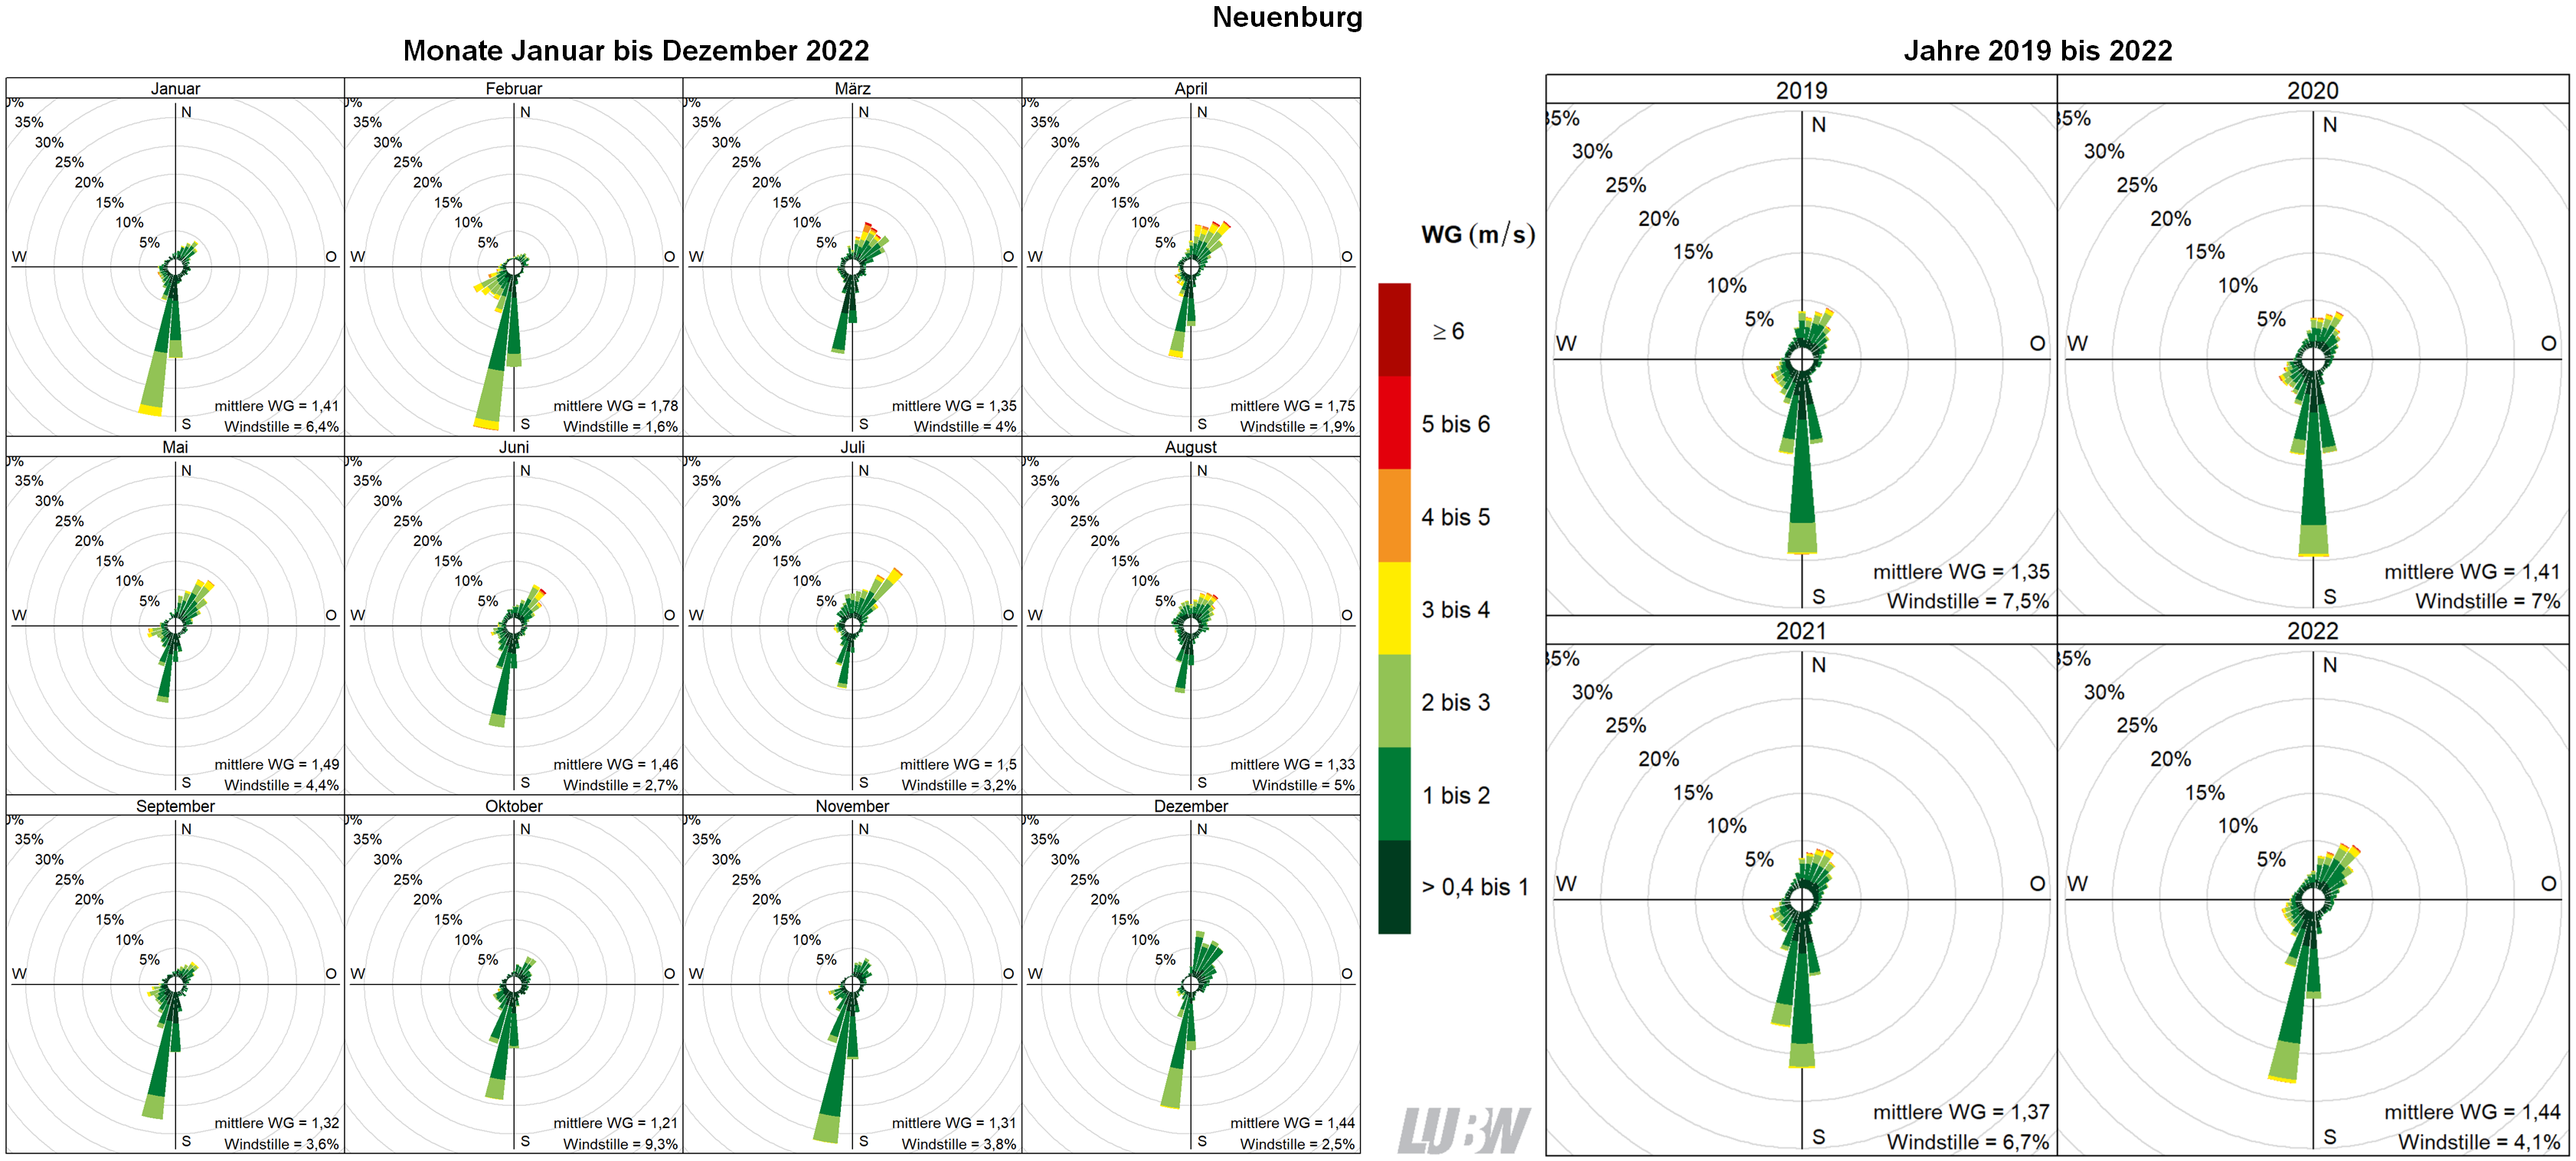  Mitttlere Windverteilung als Windrosen für die Monate Januar bis Dezember 2022 (linke Abbildung) sowie für die Jahre 2019 bis 2022 (rechte Abbildung) für den Standort Neuenburg. Weitere Informationen im umliegenden Text. 